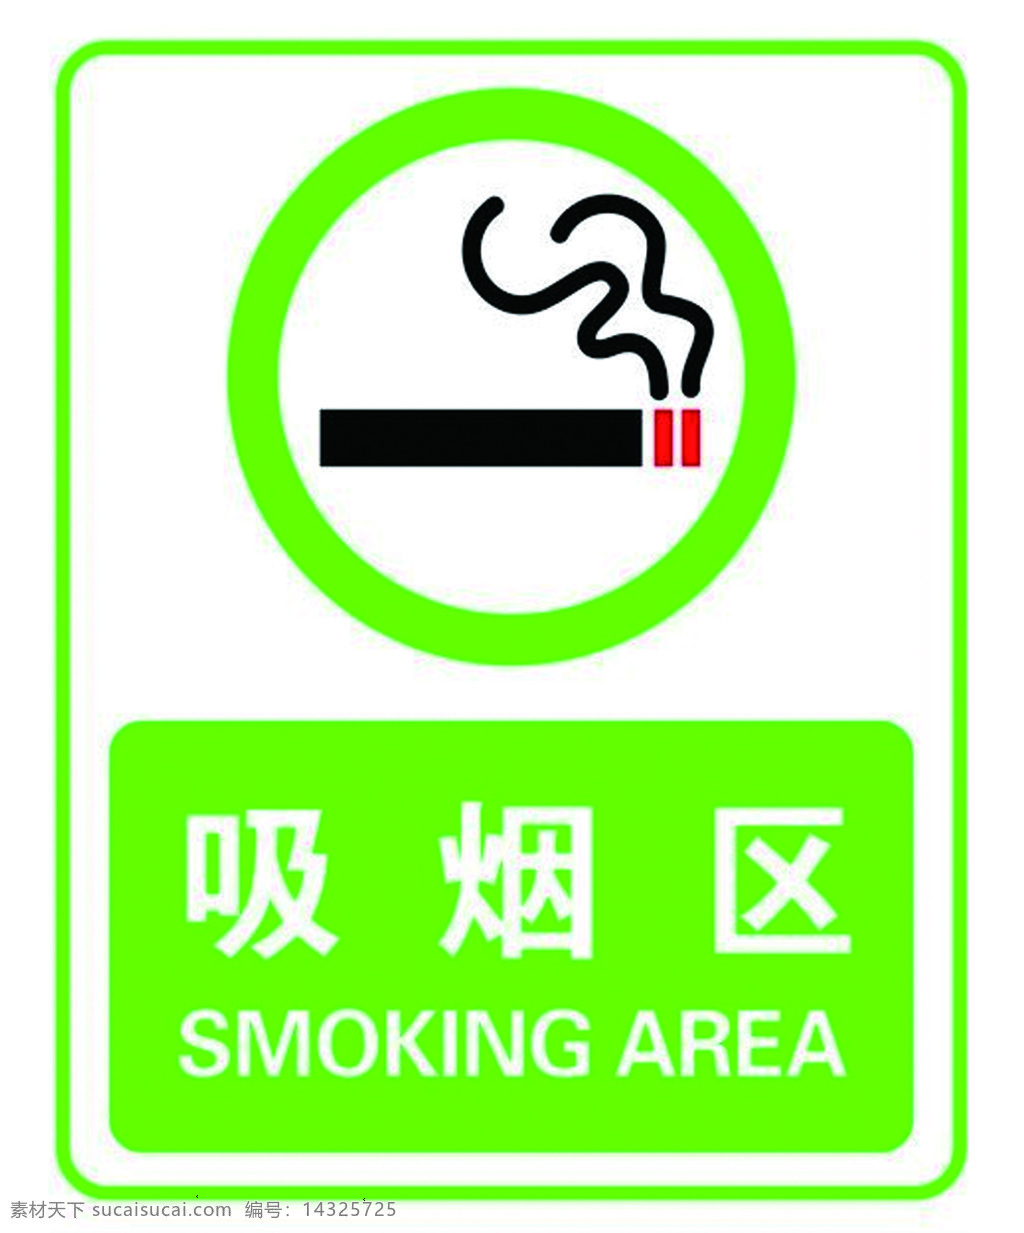 吸烟区 烟 smoking area 指定 多媒体 ps插件